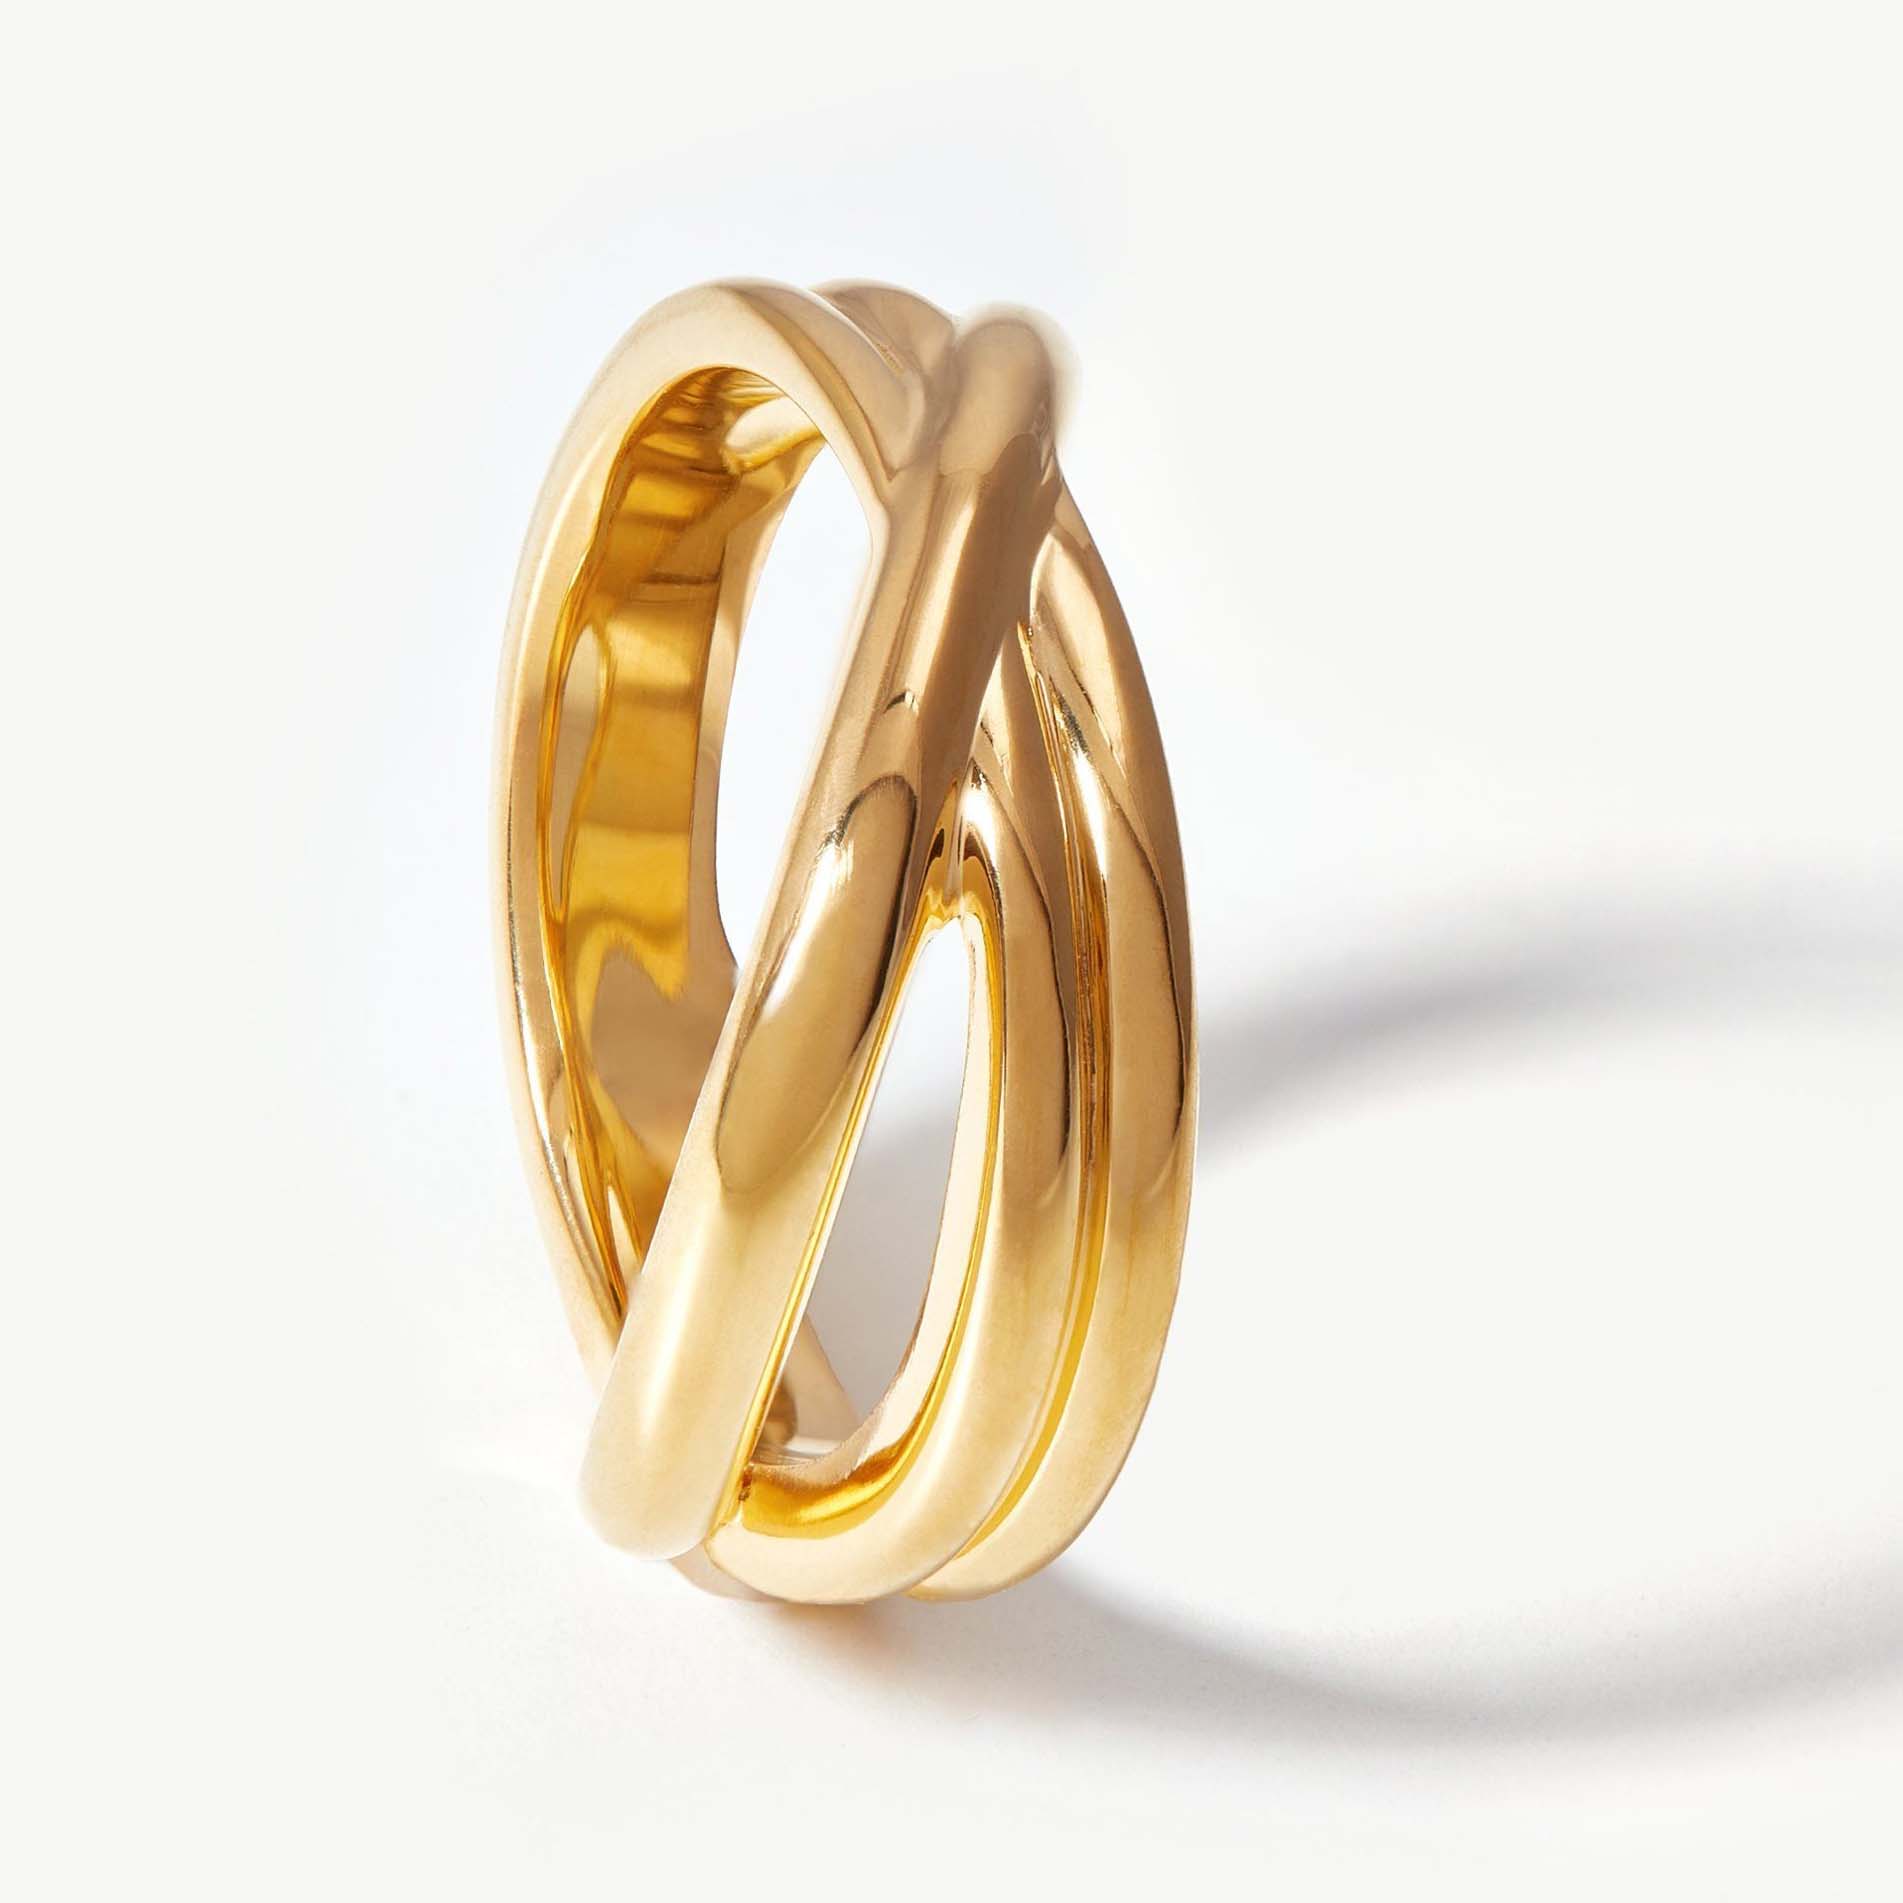 Fertigen Sie Ihren 18-Karat-vergoldeten Ring individuell aus Sterlingsilber zu einem wettbewerbsfähigen Preis an